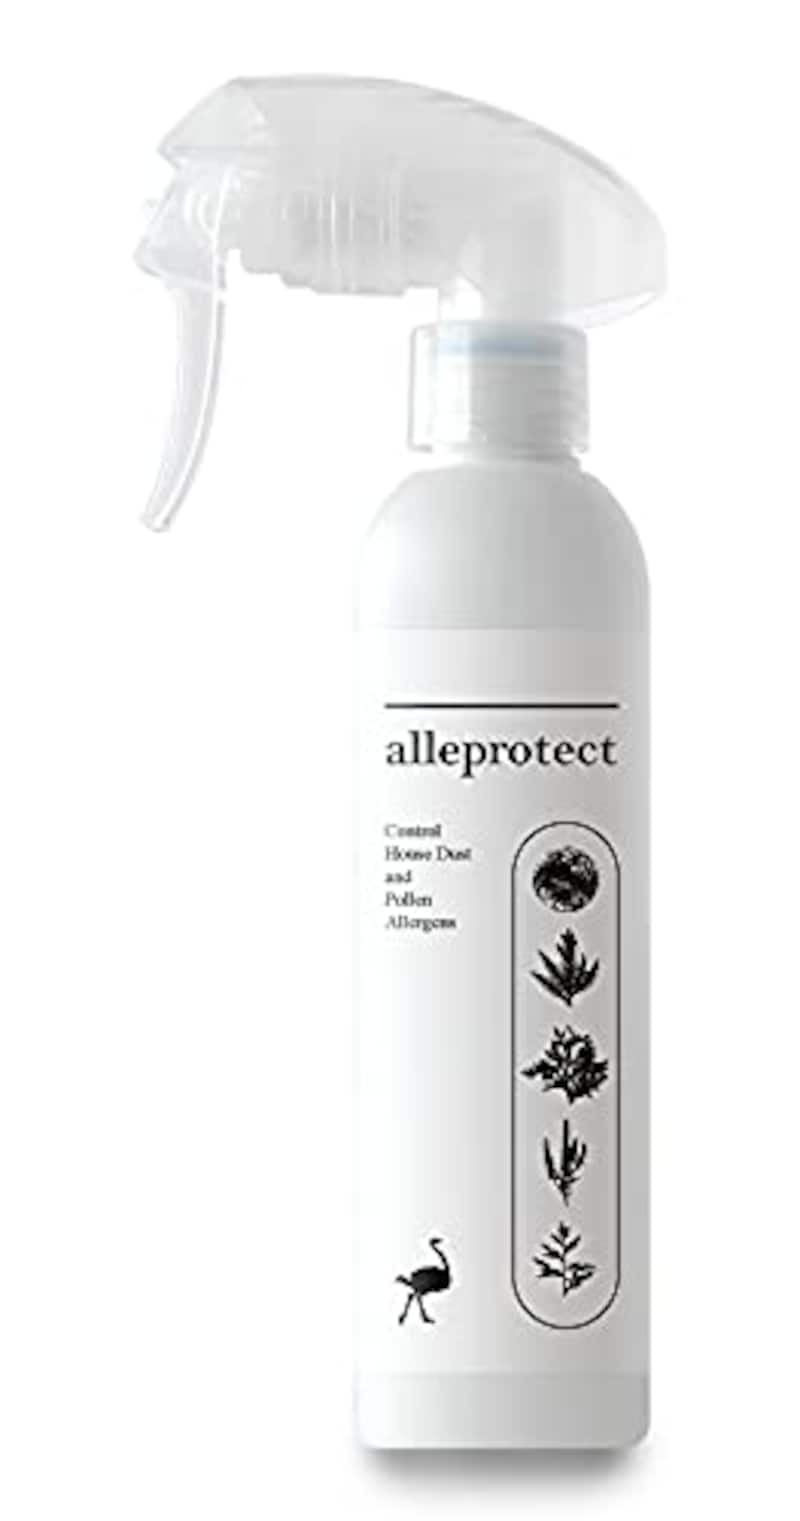 alleprotect（アレプロテクト）,ダチョウ抗体原料配合 ハウスダスト・花粉用ルームスプレー